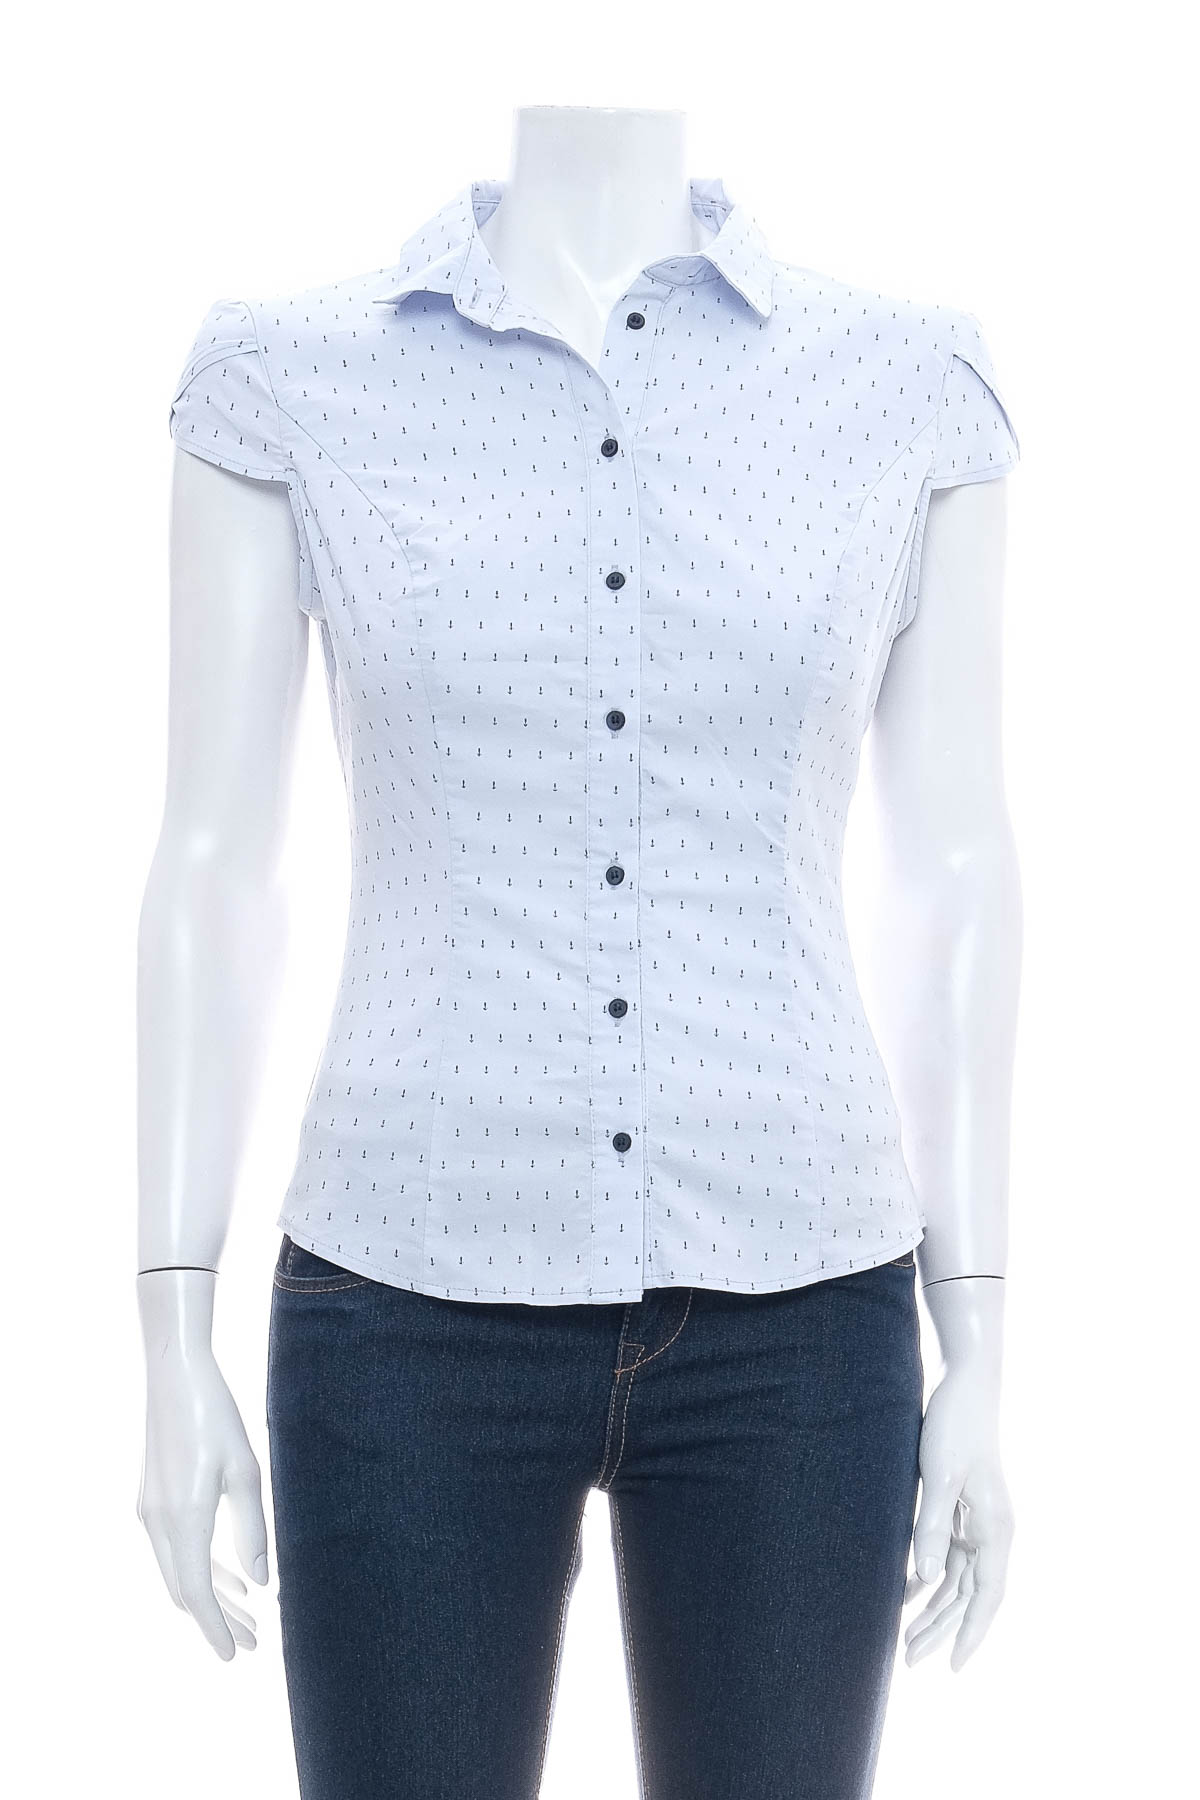 Γυναικείо πουκάμισο - Orsay - 0